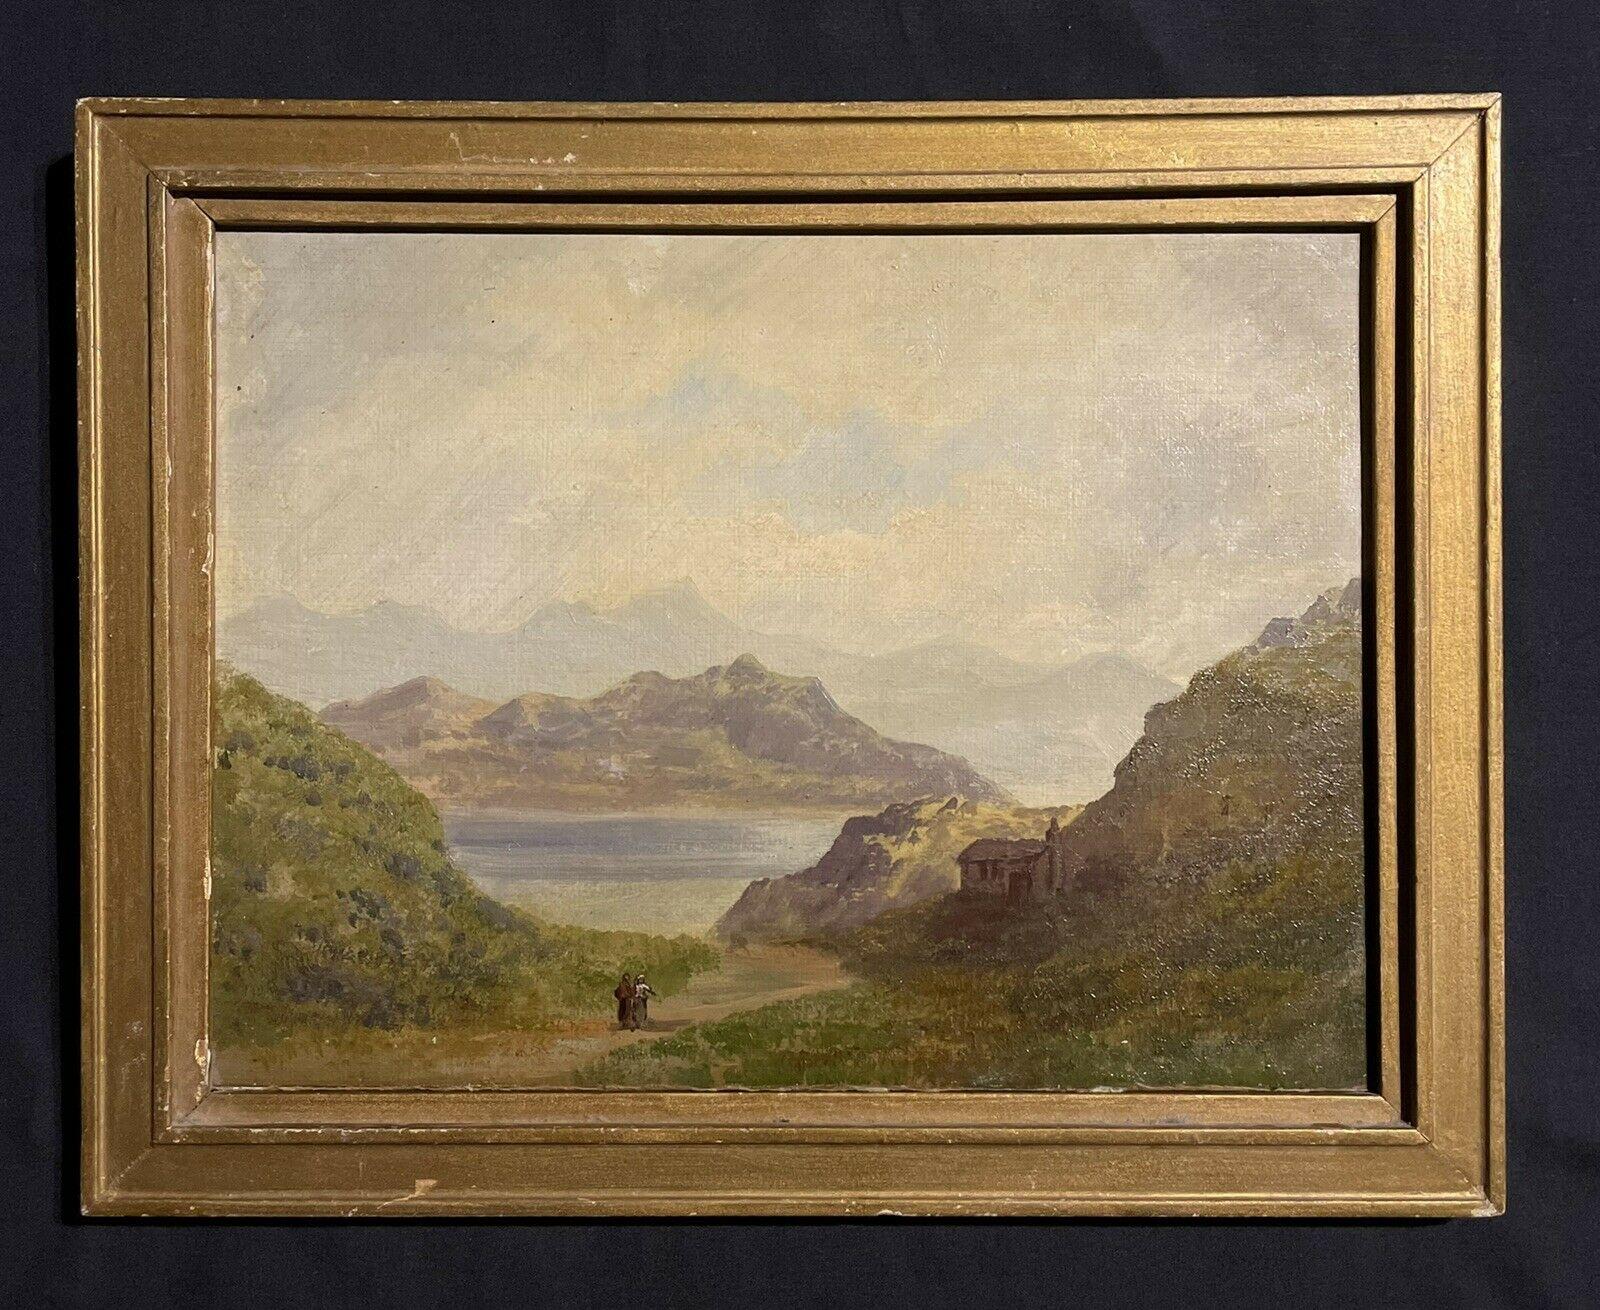 Peinture à l'huile écossaise du début du 19e siècle Figures dans un paysage dramatique des Highlands - Painting de 19thC Scottish